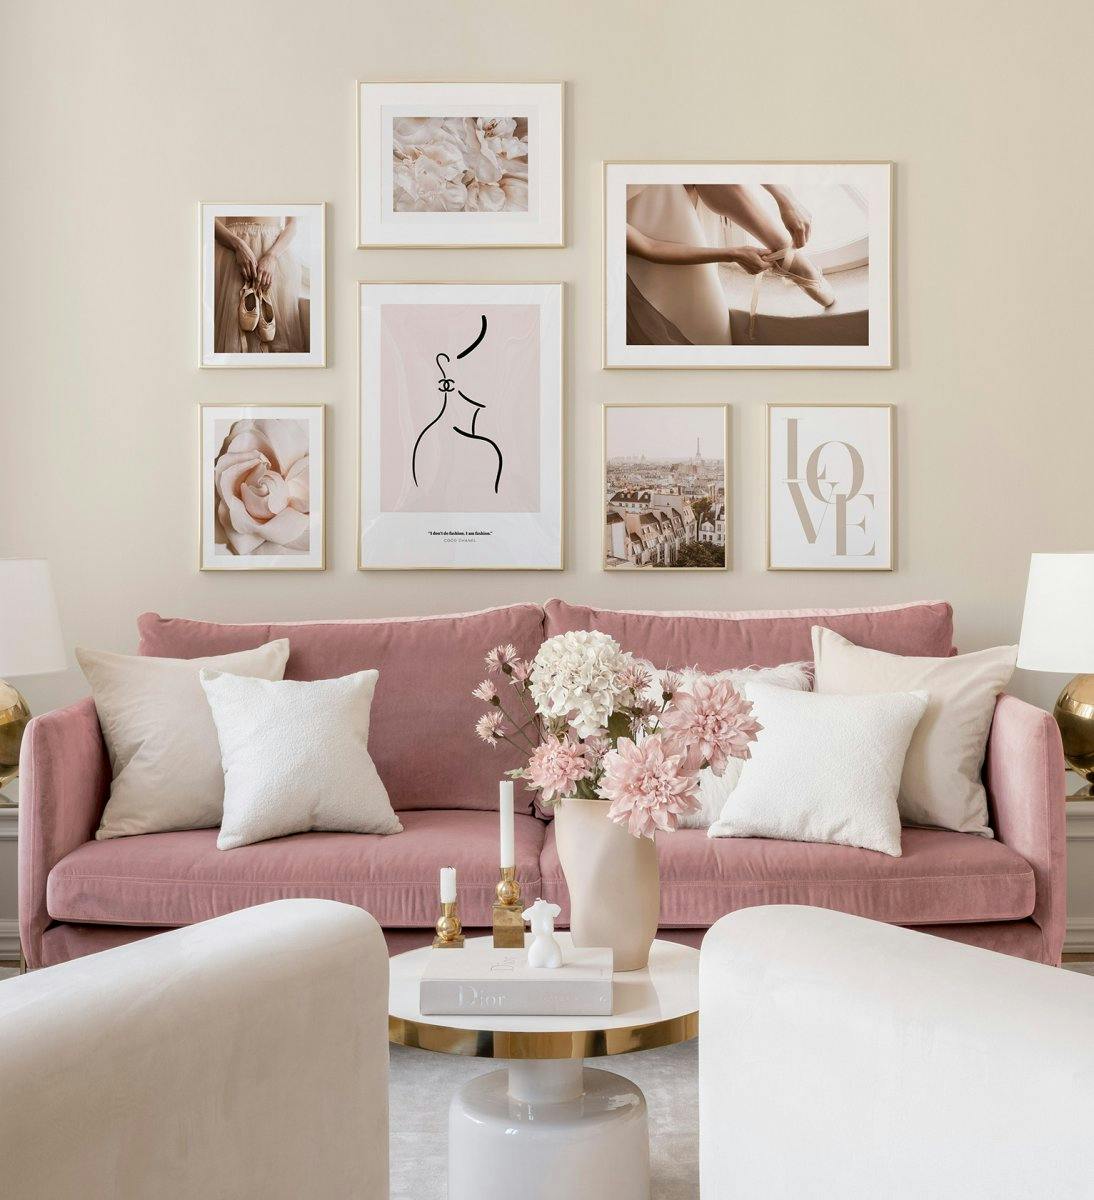 Galerie foto de perete elegantă pentru camera de zi în nuanțe de roz, prezentată în rame aurii.